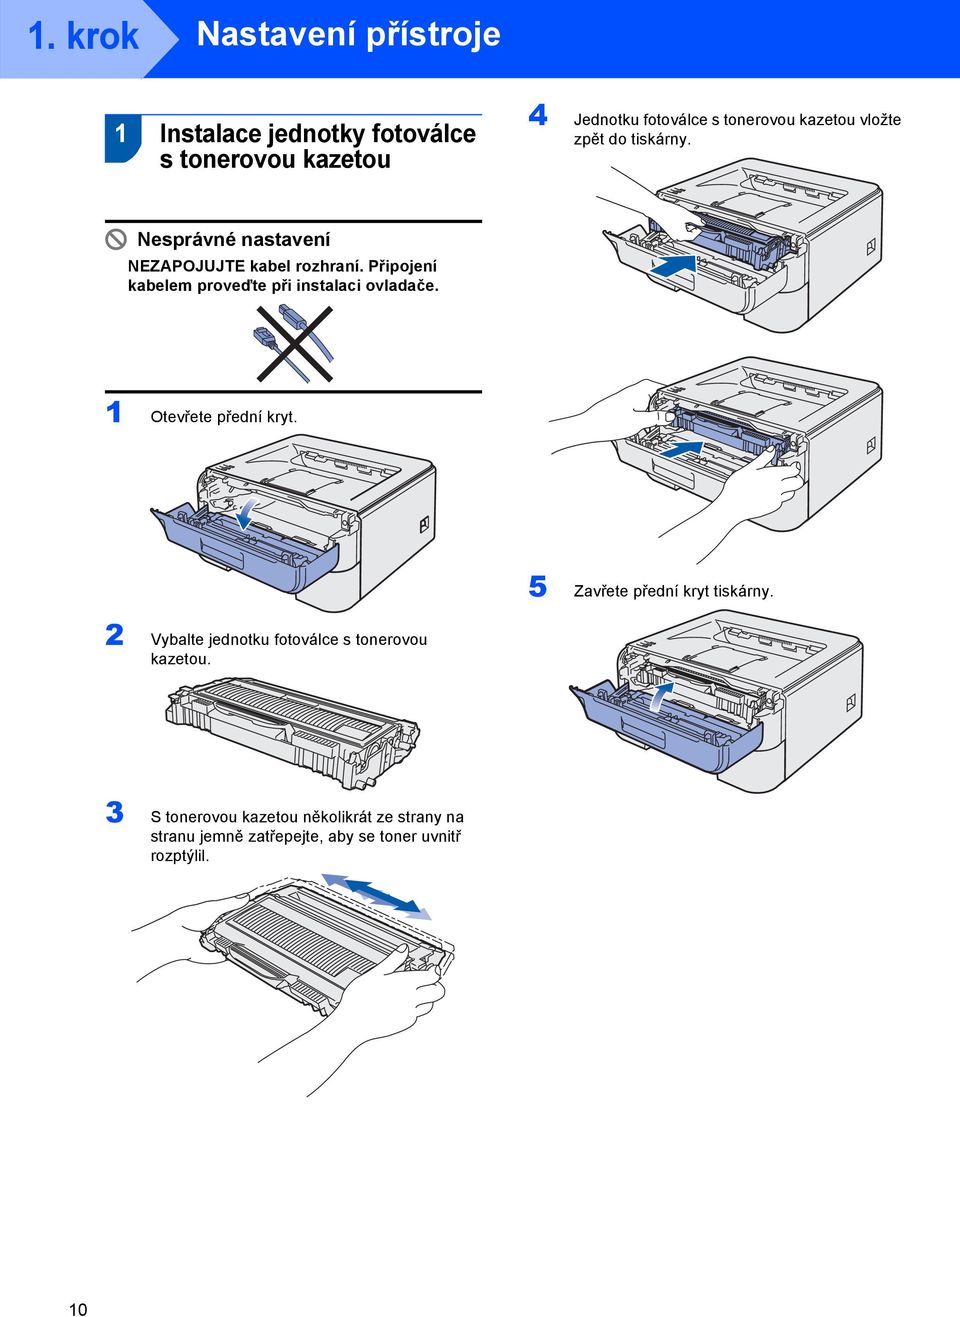 Připojení kabelem proveďte při instalaci ovladače. 1 Otevřete přední kryt. 5 Zavřete přední kryt tiskárny.